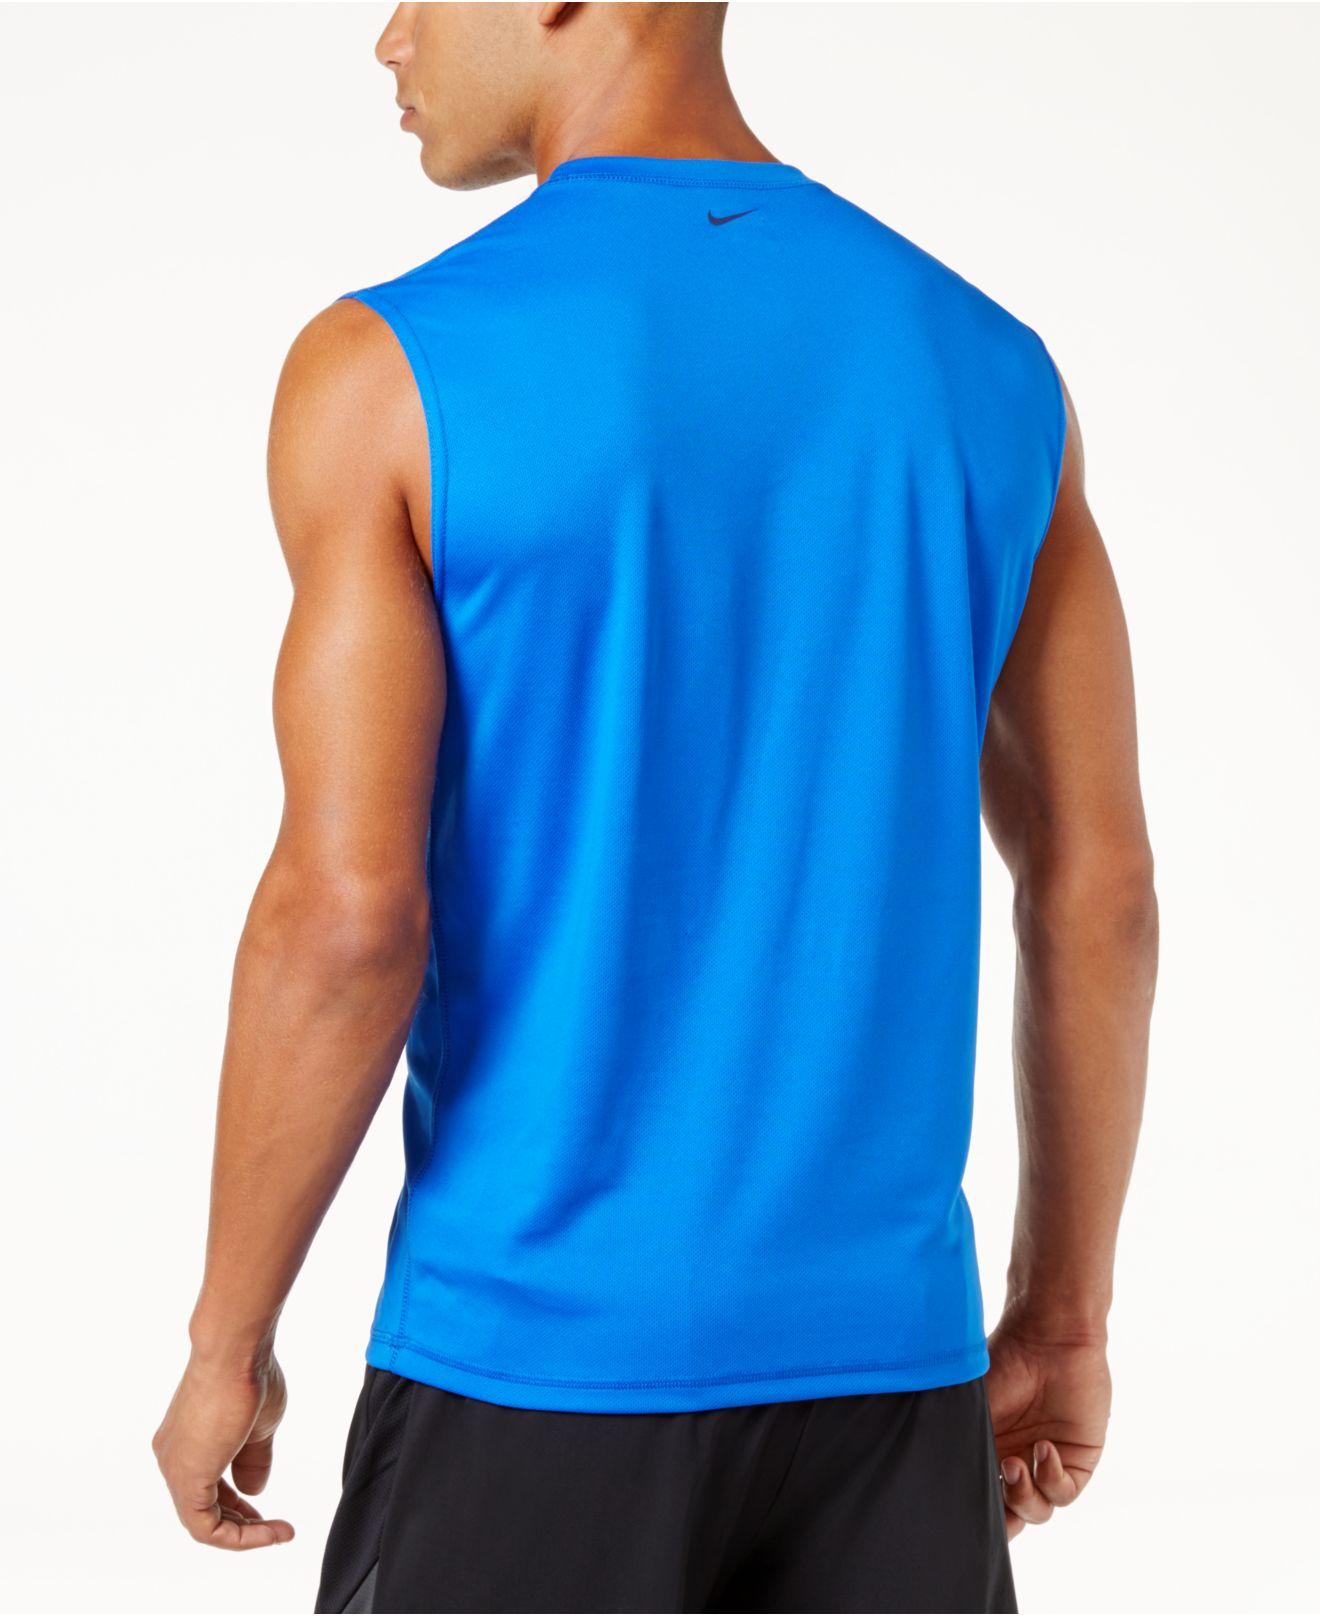 Lyst - Nike Men's Graphic Print Sleeveless T-shirt in Blue for Men